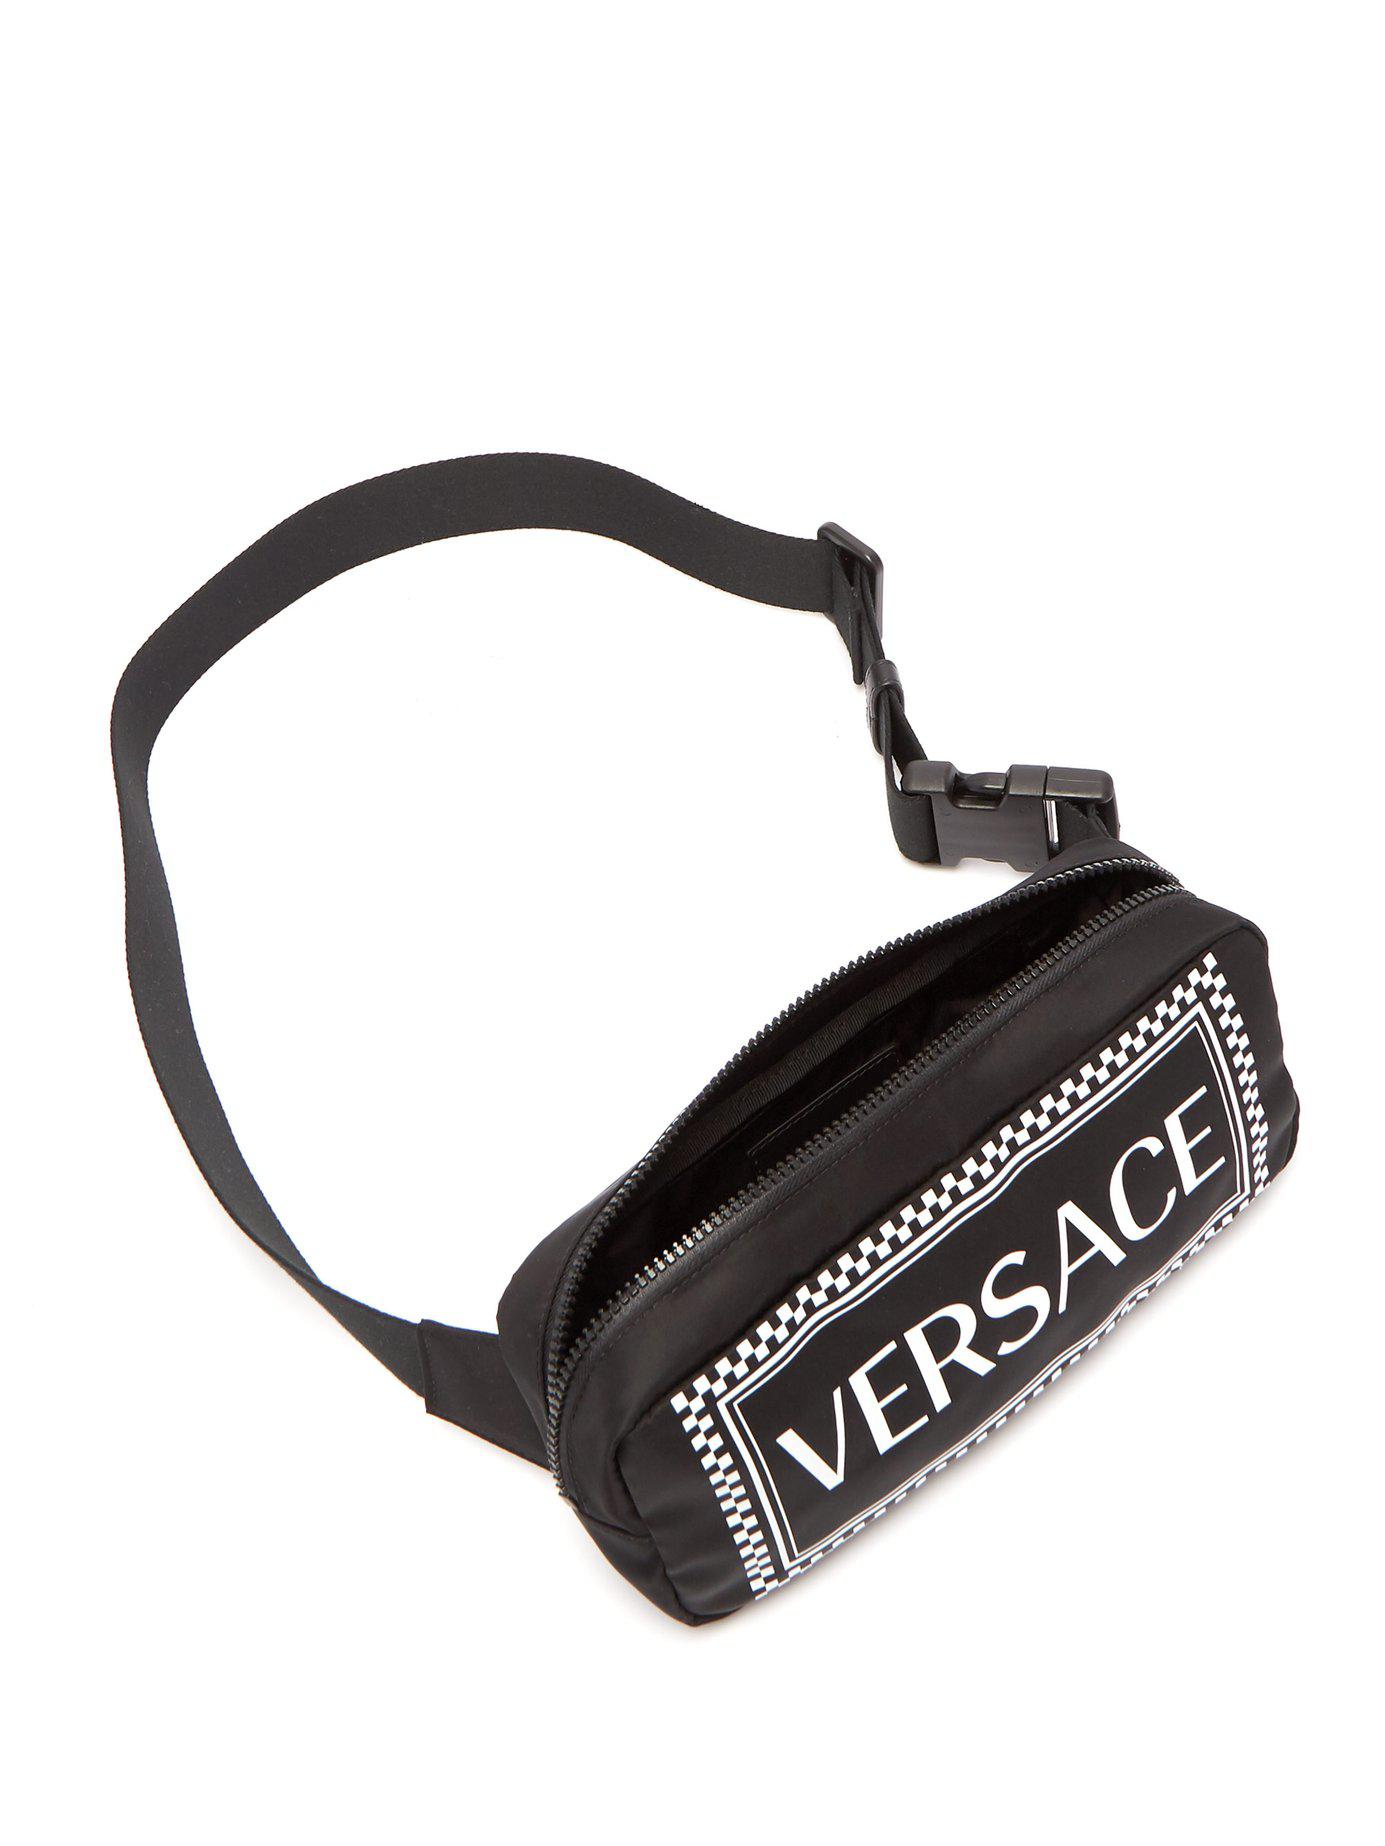 Versace Synthetic Logo Print Nylon Belt Bag in Black for Men - Lyst